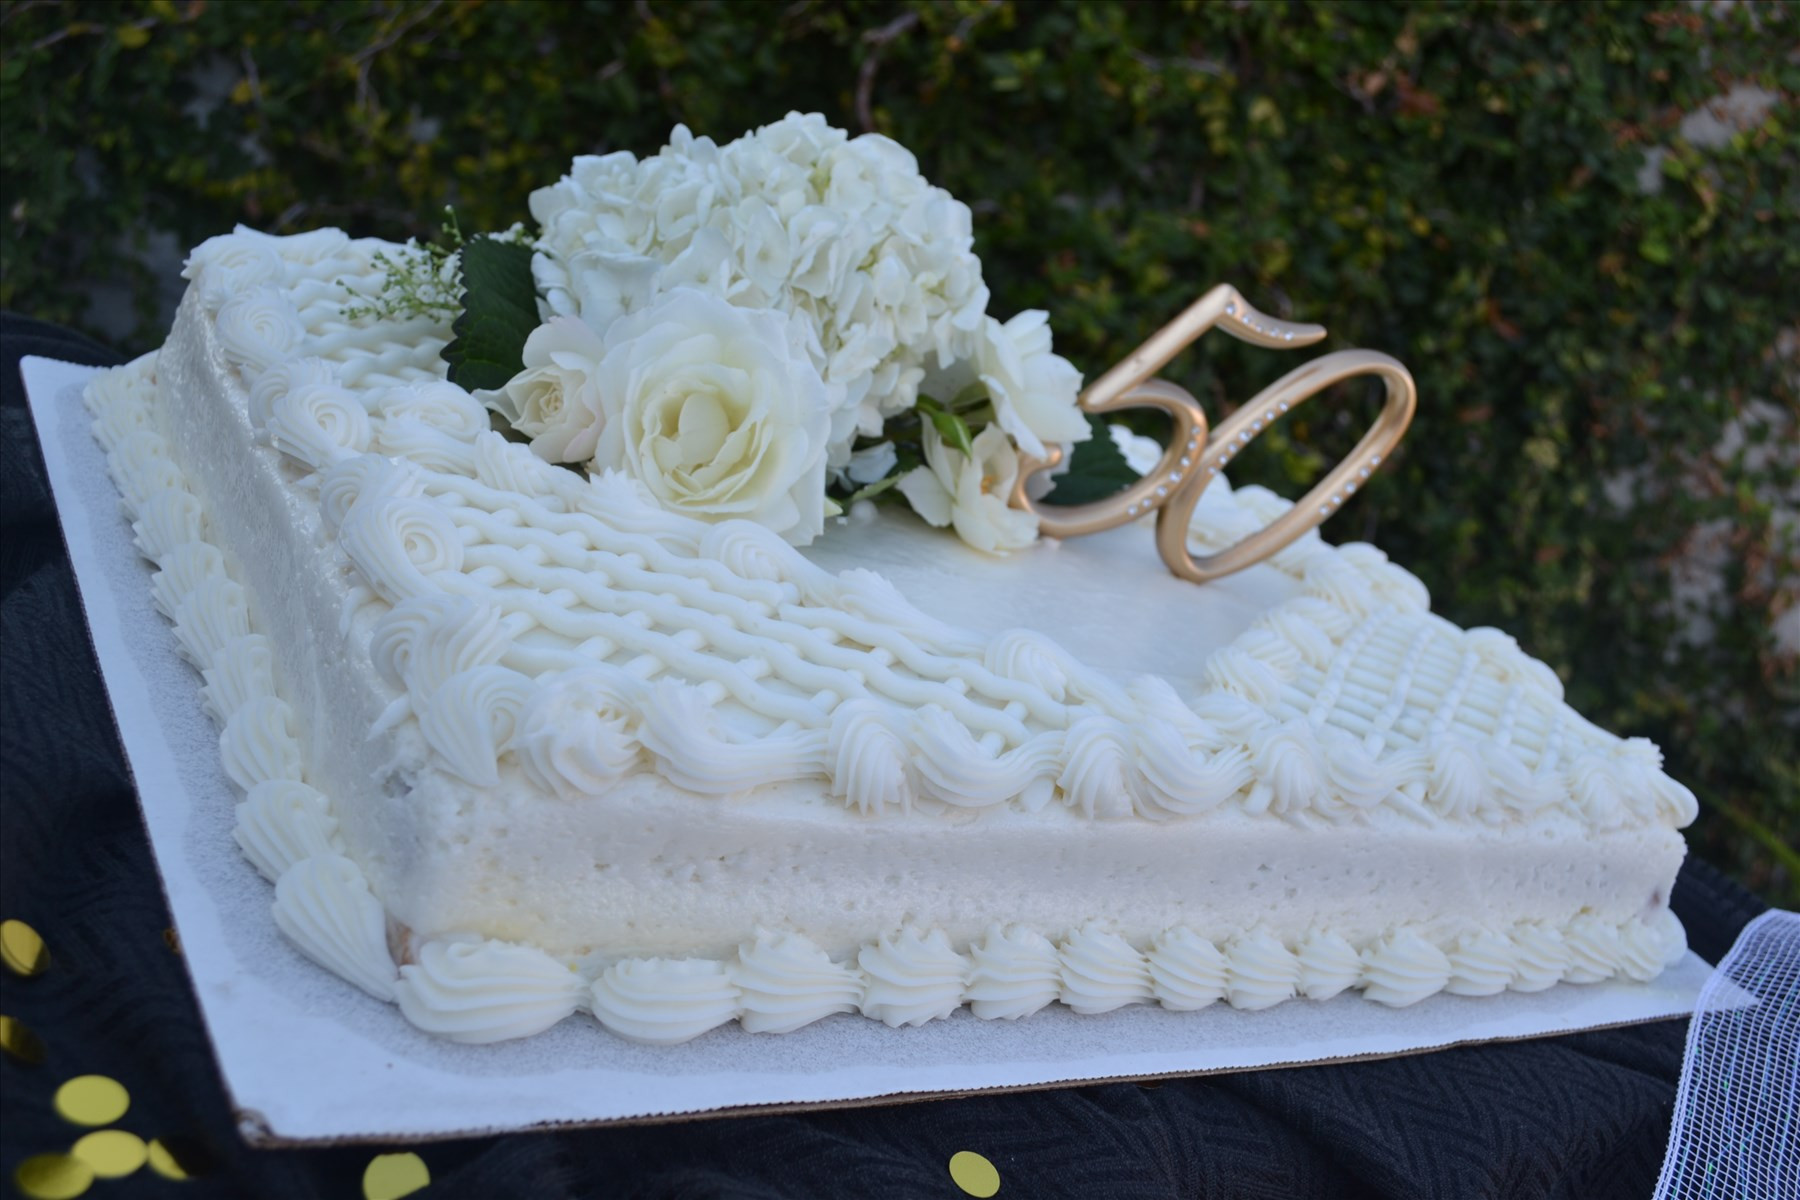 Costco Wedding Cakes Designs
 Costco wedding cakes idea in 2017